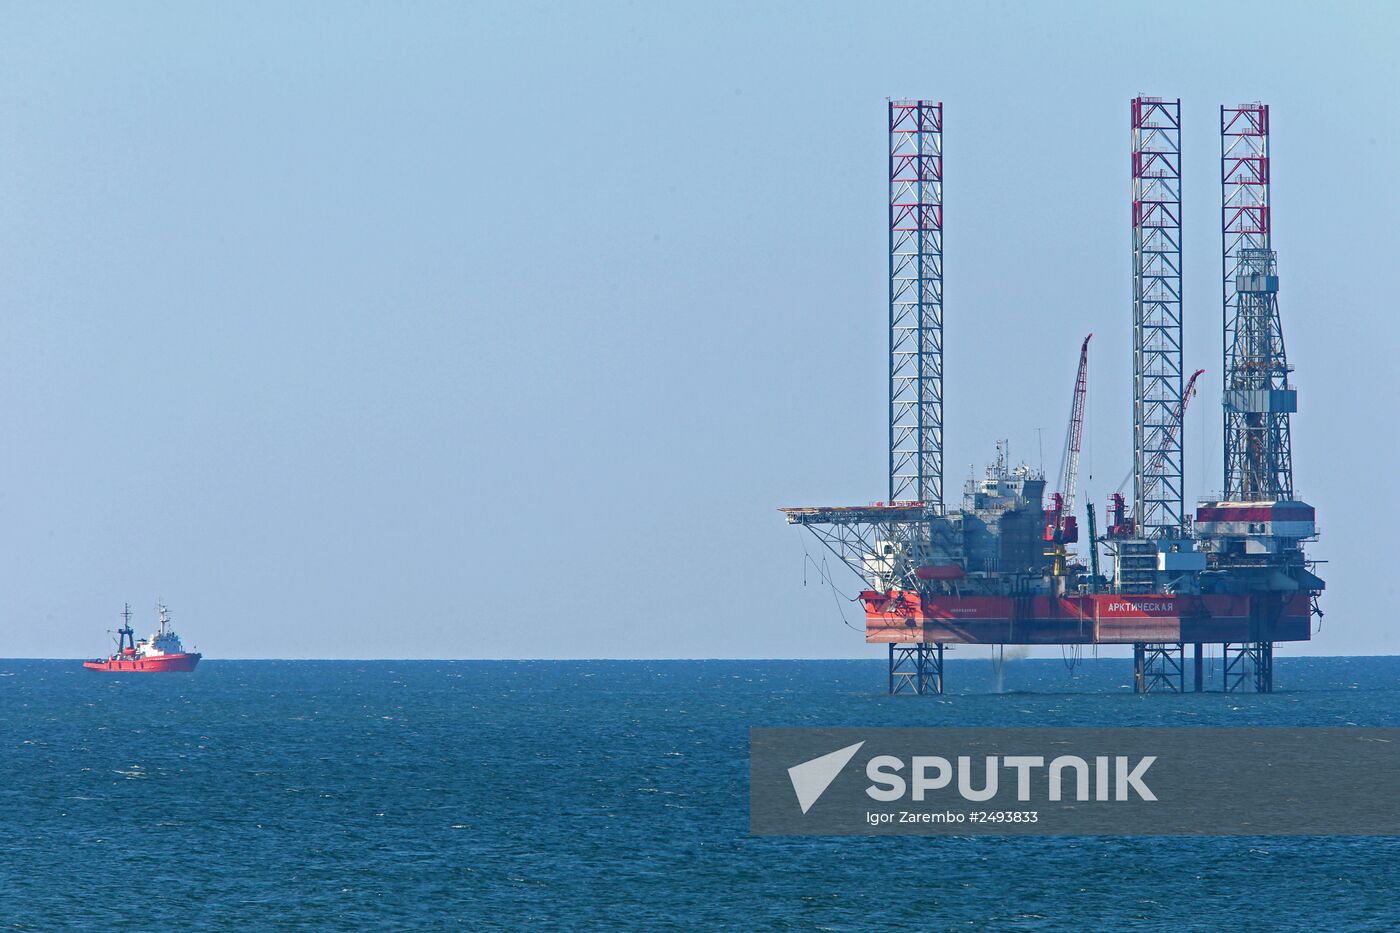 Arkticheskaya jack-up floating drilling rig